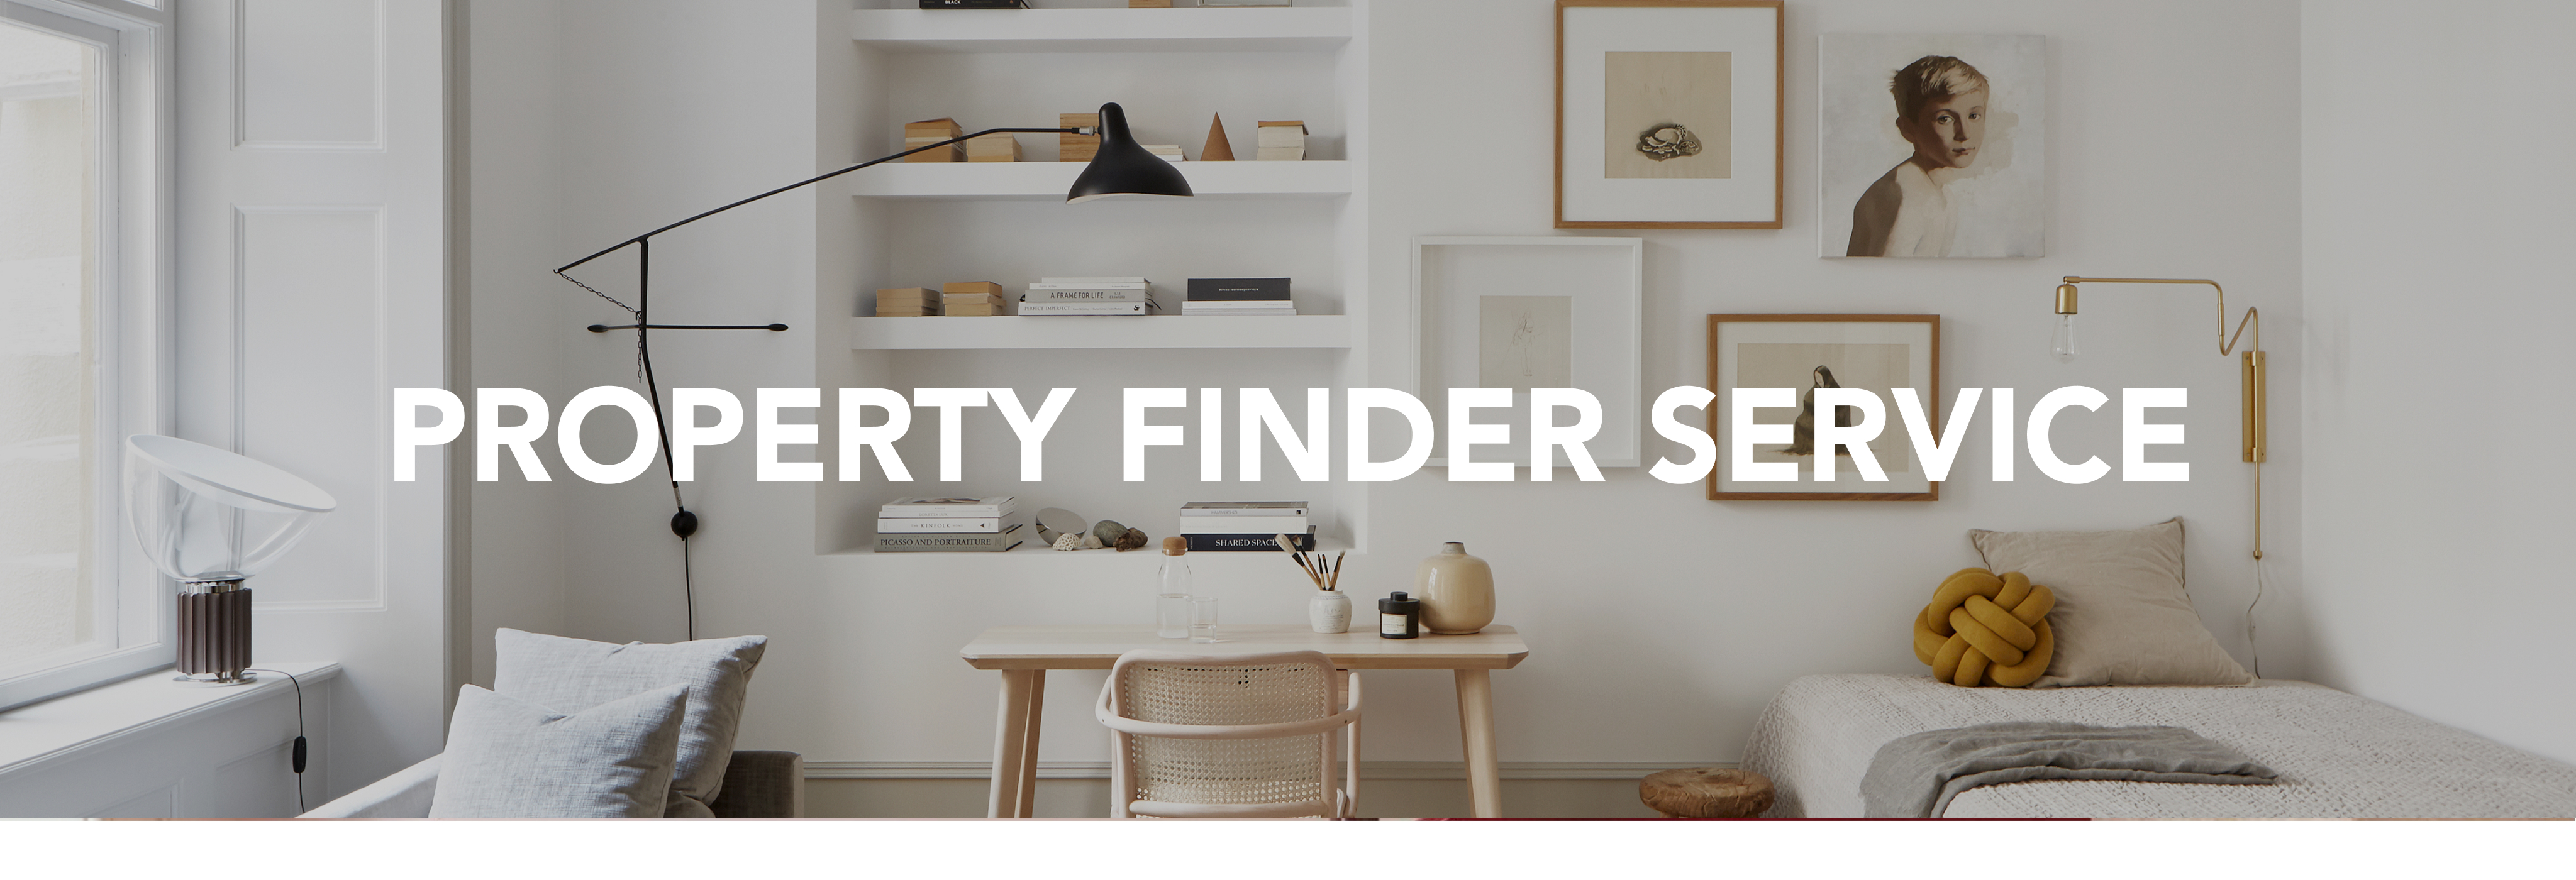 Property Finder Service header